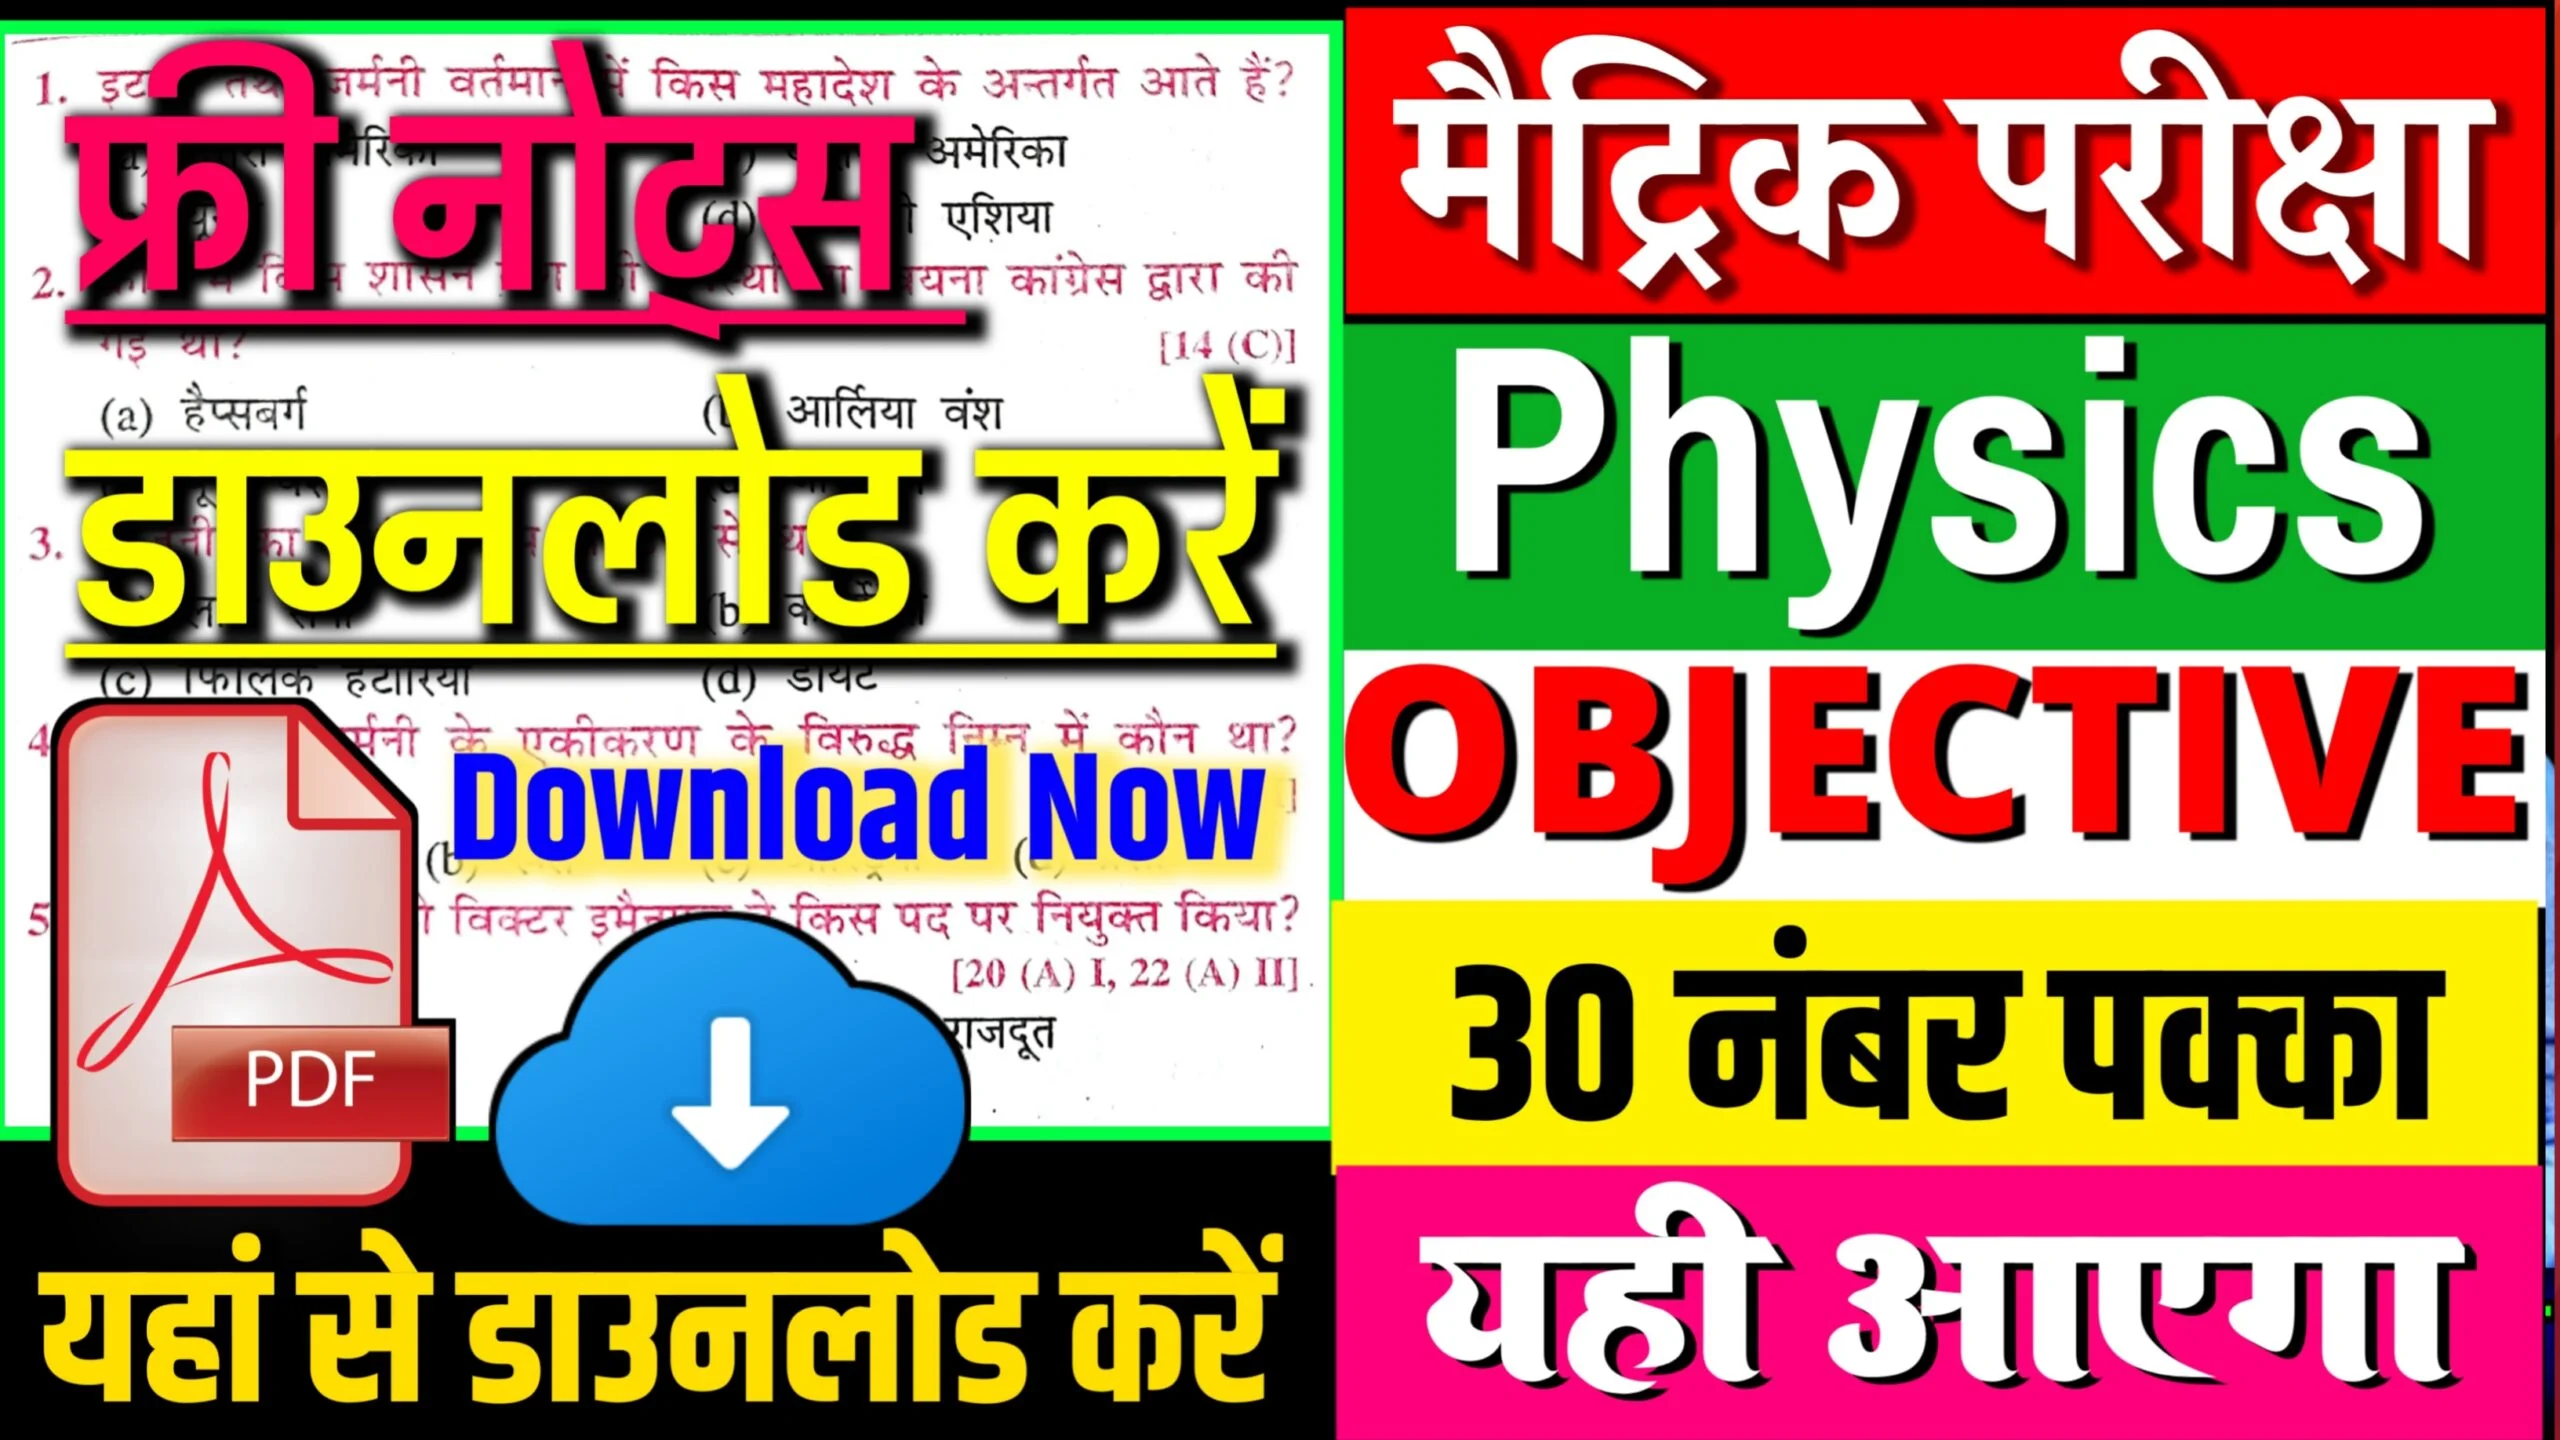 भौतिकी का पूरा ऑब्जेक्टिव का नोट्स फ्री में डाउनलोड करे यहाँ से :Class 10th Physics Of Notes Free Download Here